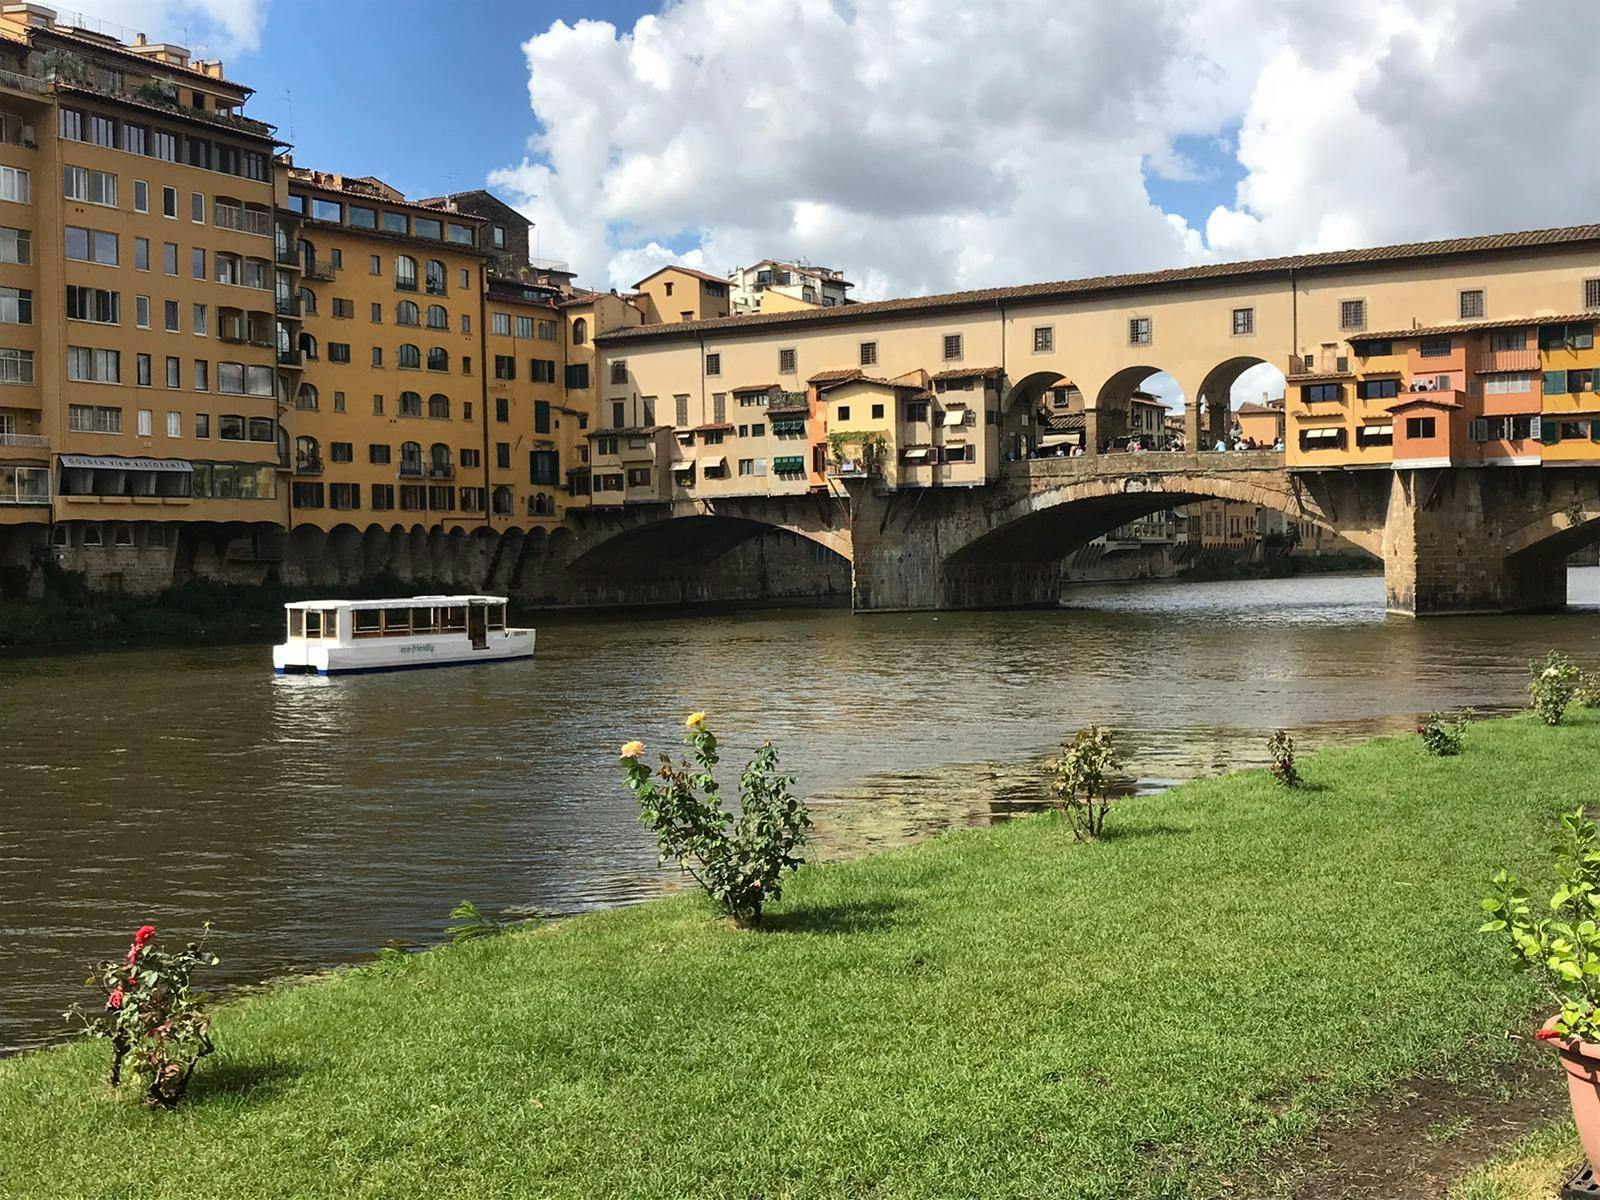 Wycieczka piesza po Florencji z rejsem łodzią elektryczną po rzece Arno